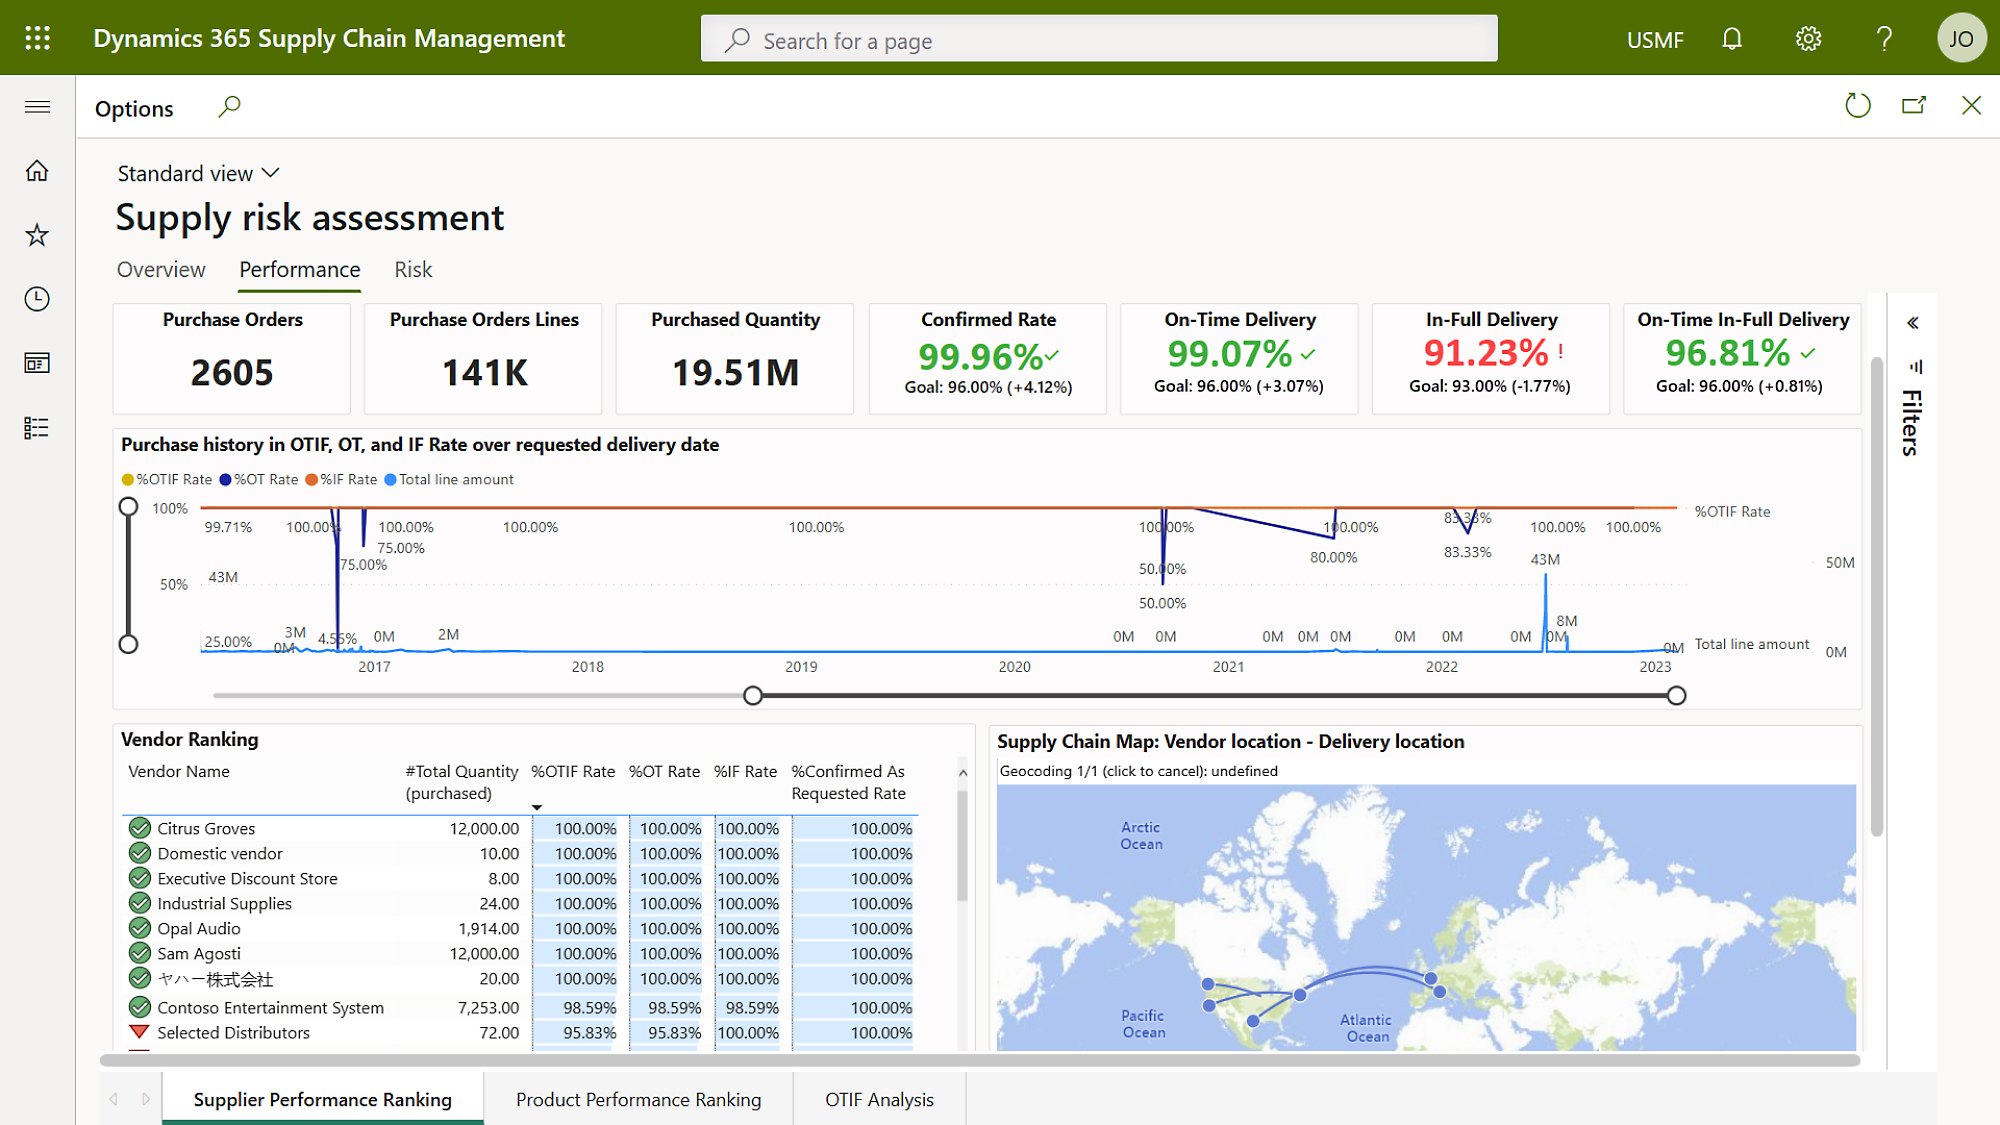 Dashboard che mostra la mappa globale e altre statistiche per la valutazione dei rischi nella gestione della catena di approvvigionamento.